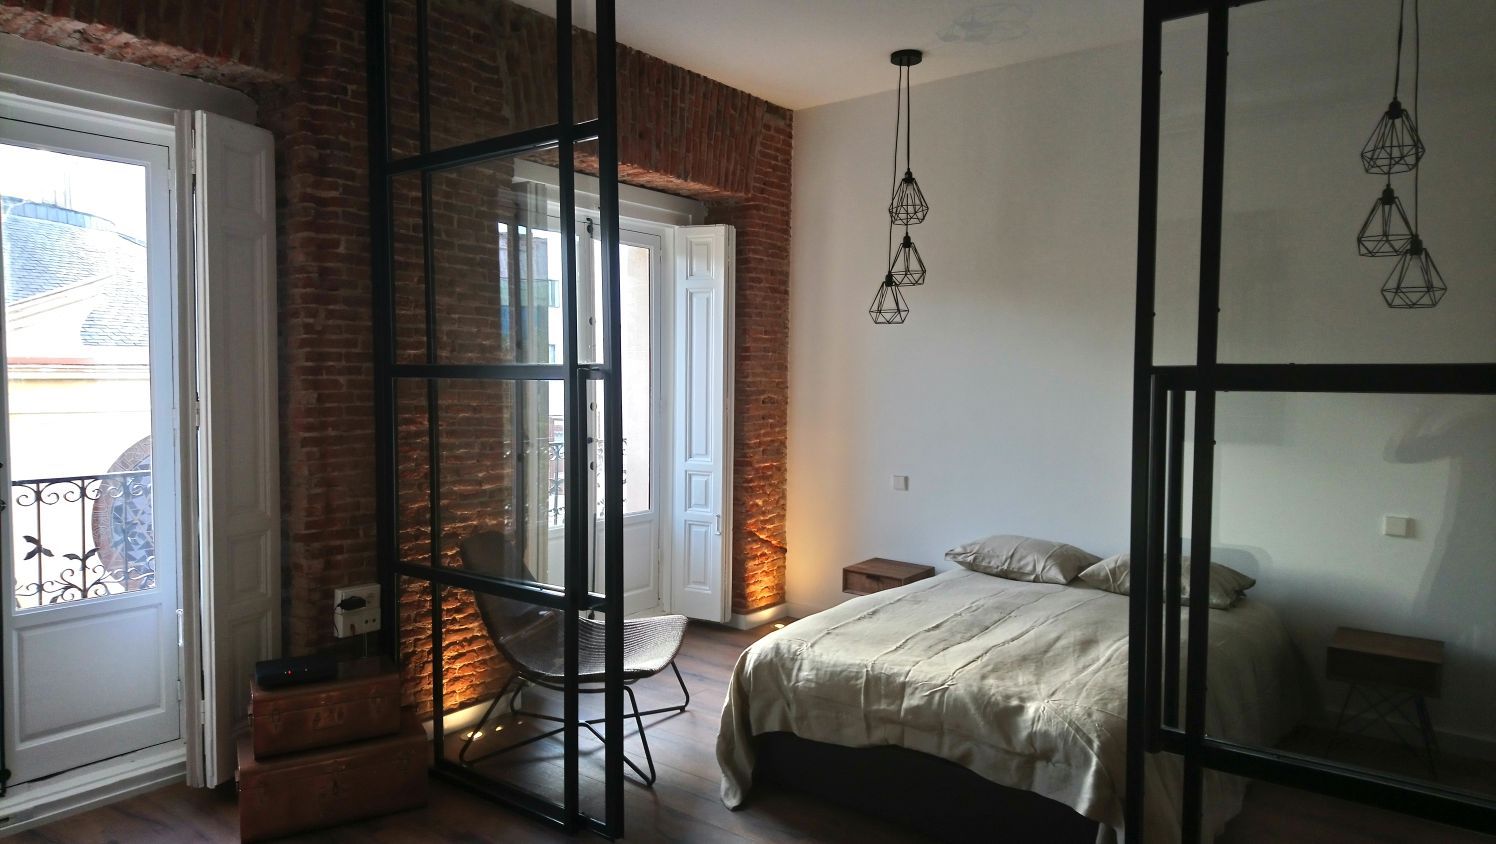 Apartamento turístico en La Latina, GARMA+ZAMBRANO Arquitectura GARMA+ZAMBRANO Arquitectura Industrial style bedroom